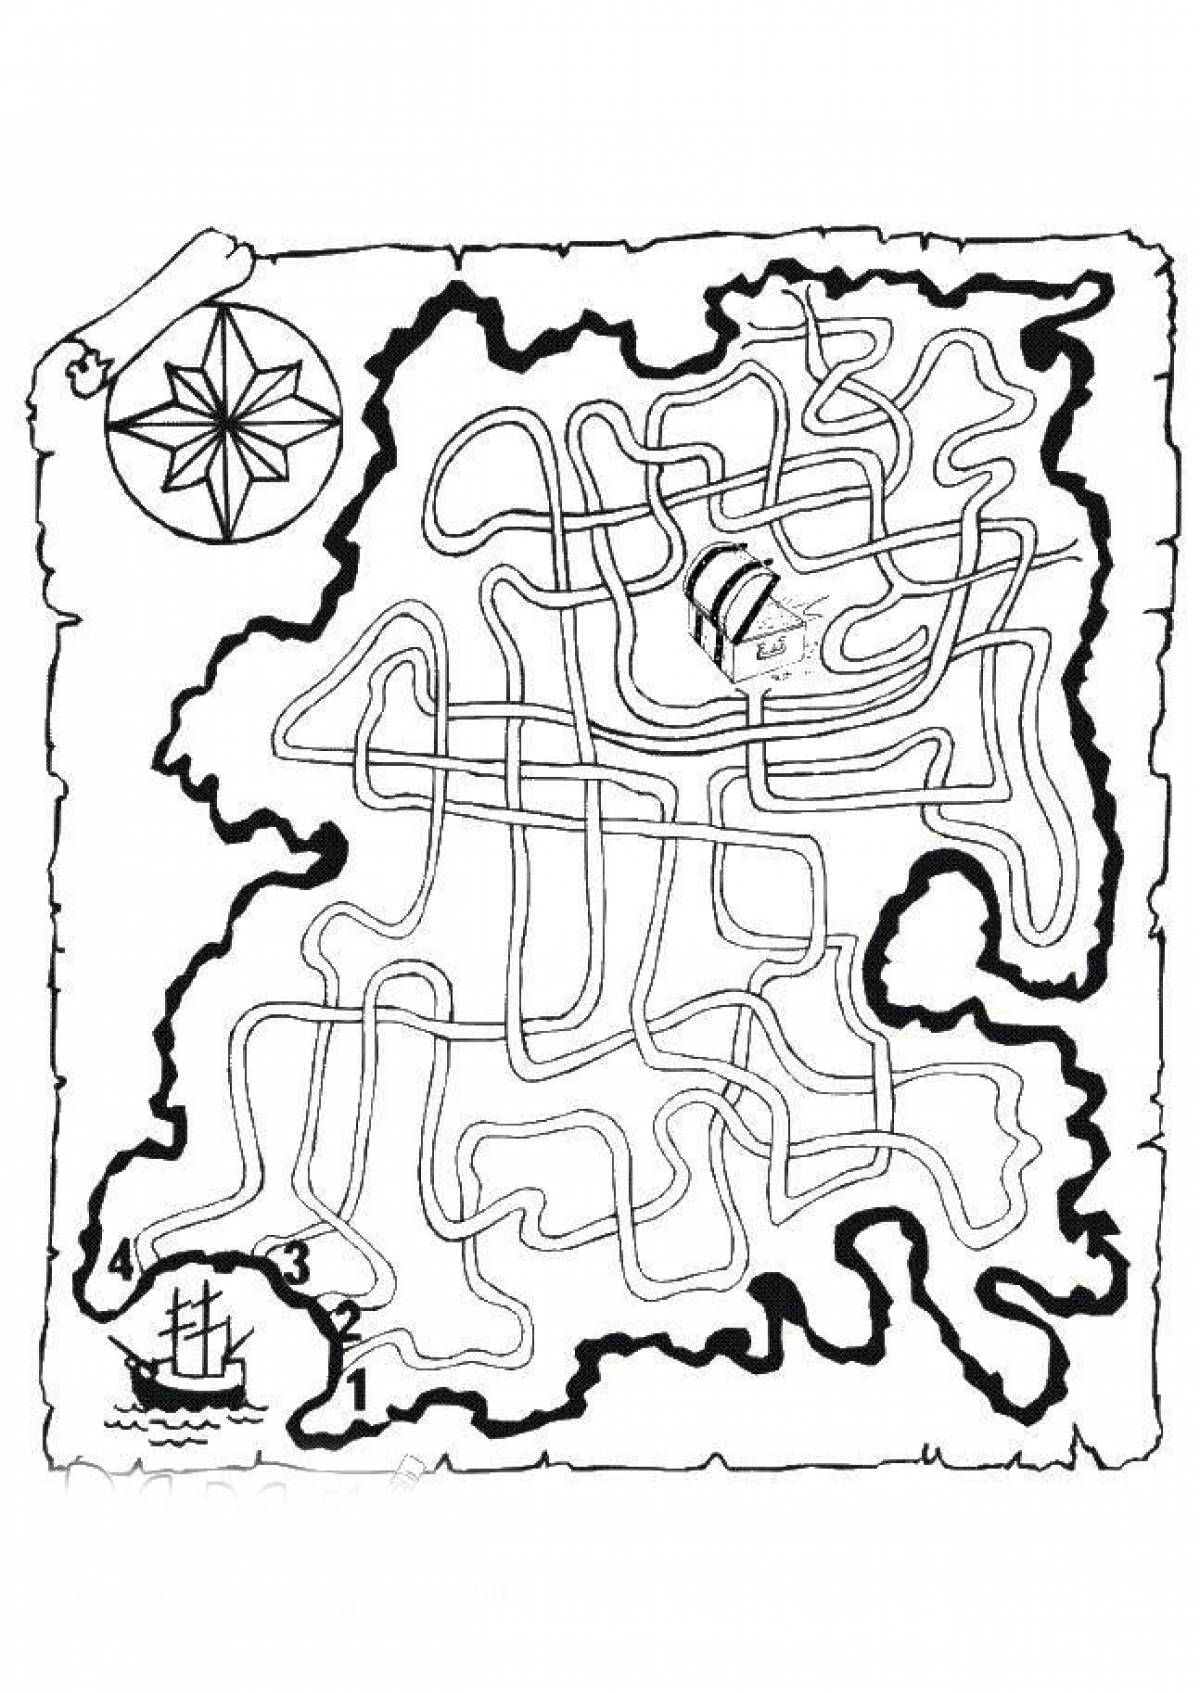 Карта для раскрашивания. Пиратская карта Лабиринт раскраска. Пиратский Лабиринт для детей. Карта раскраска. Карта сокровищ раскраска.